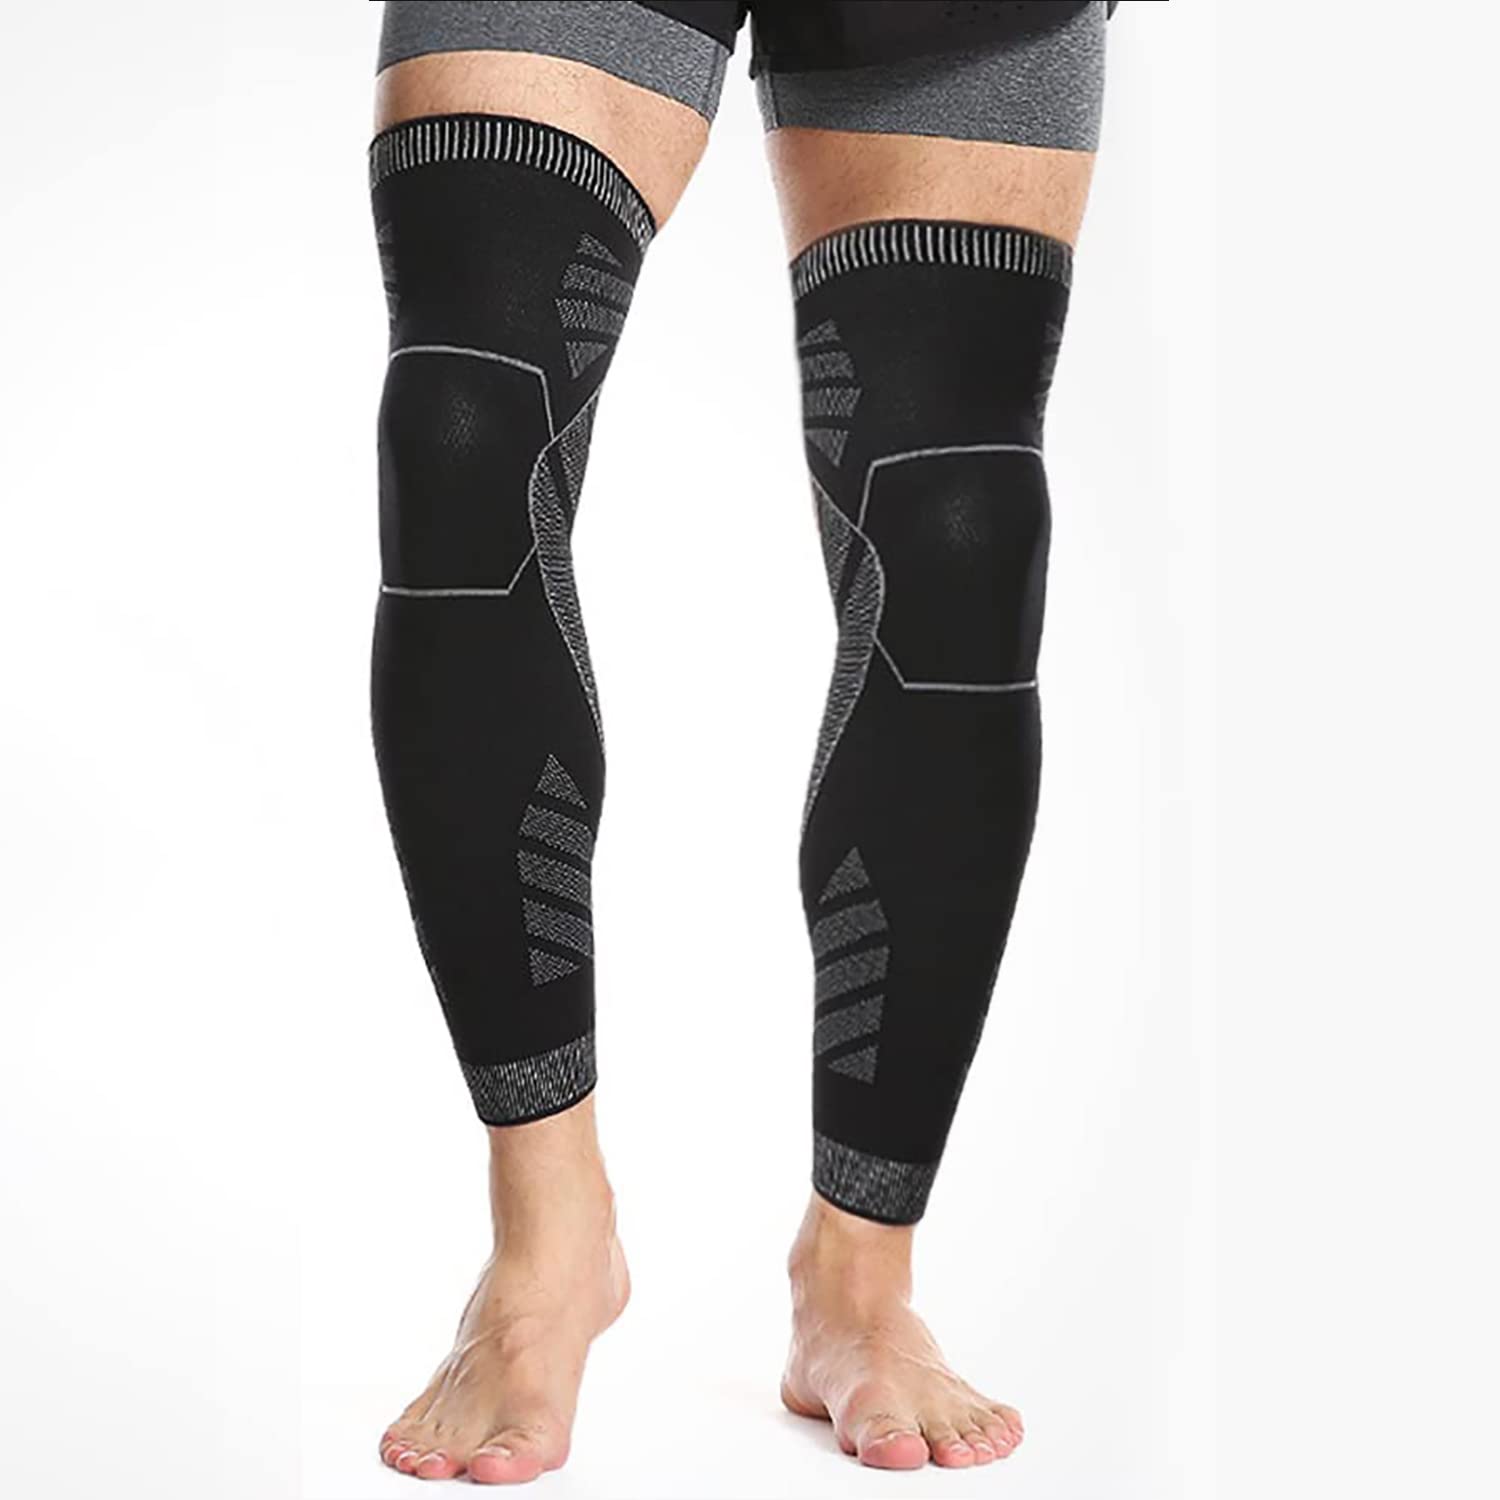 SPOTBRACE Long Leg Compression Sleeves For Men (2 PACK) Full Leg